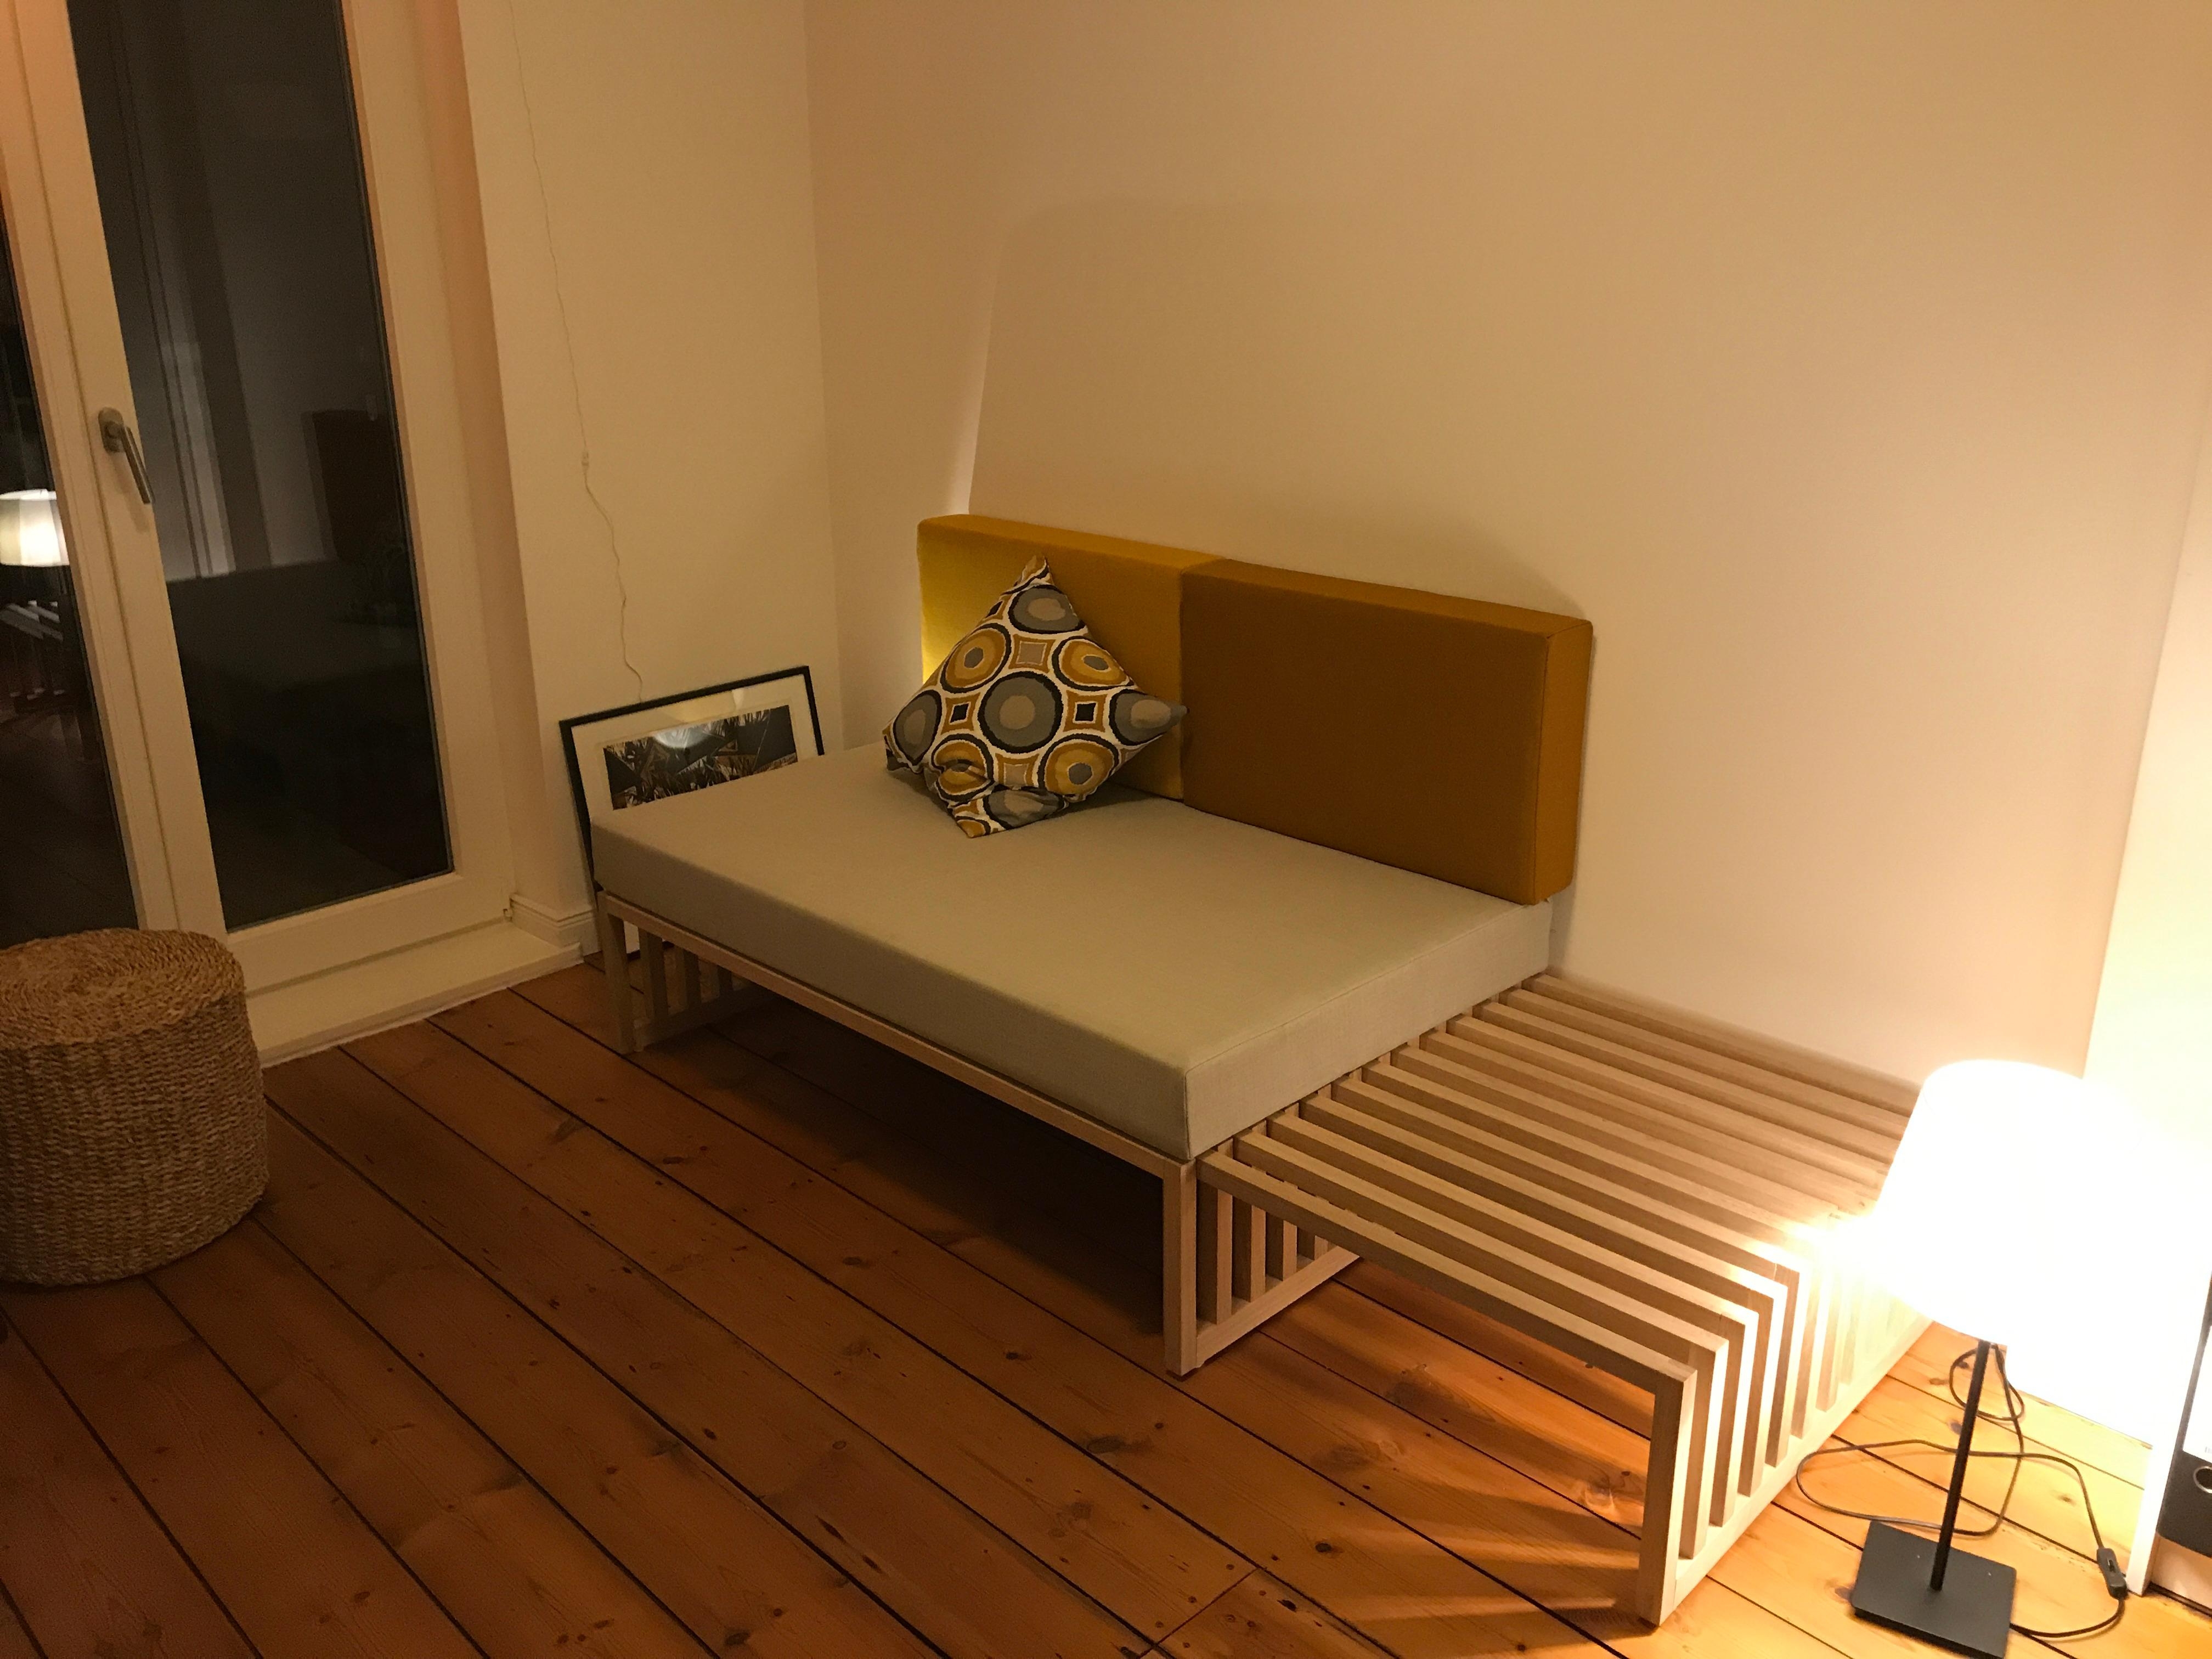 ein kleines Sofa, was auch als Gästebett benutzt werden kann.
#schlafen #bett #skandistyle